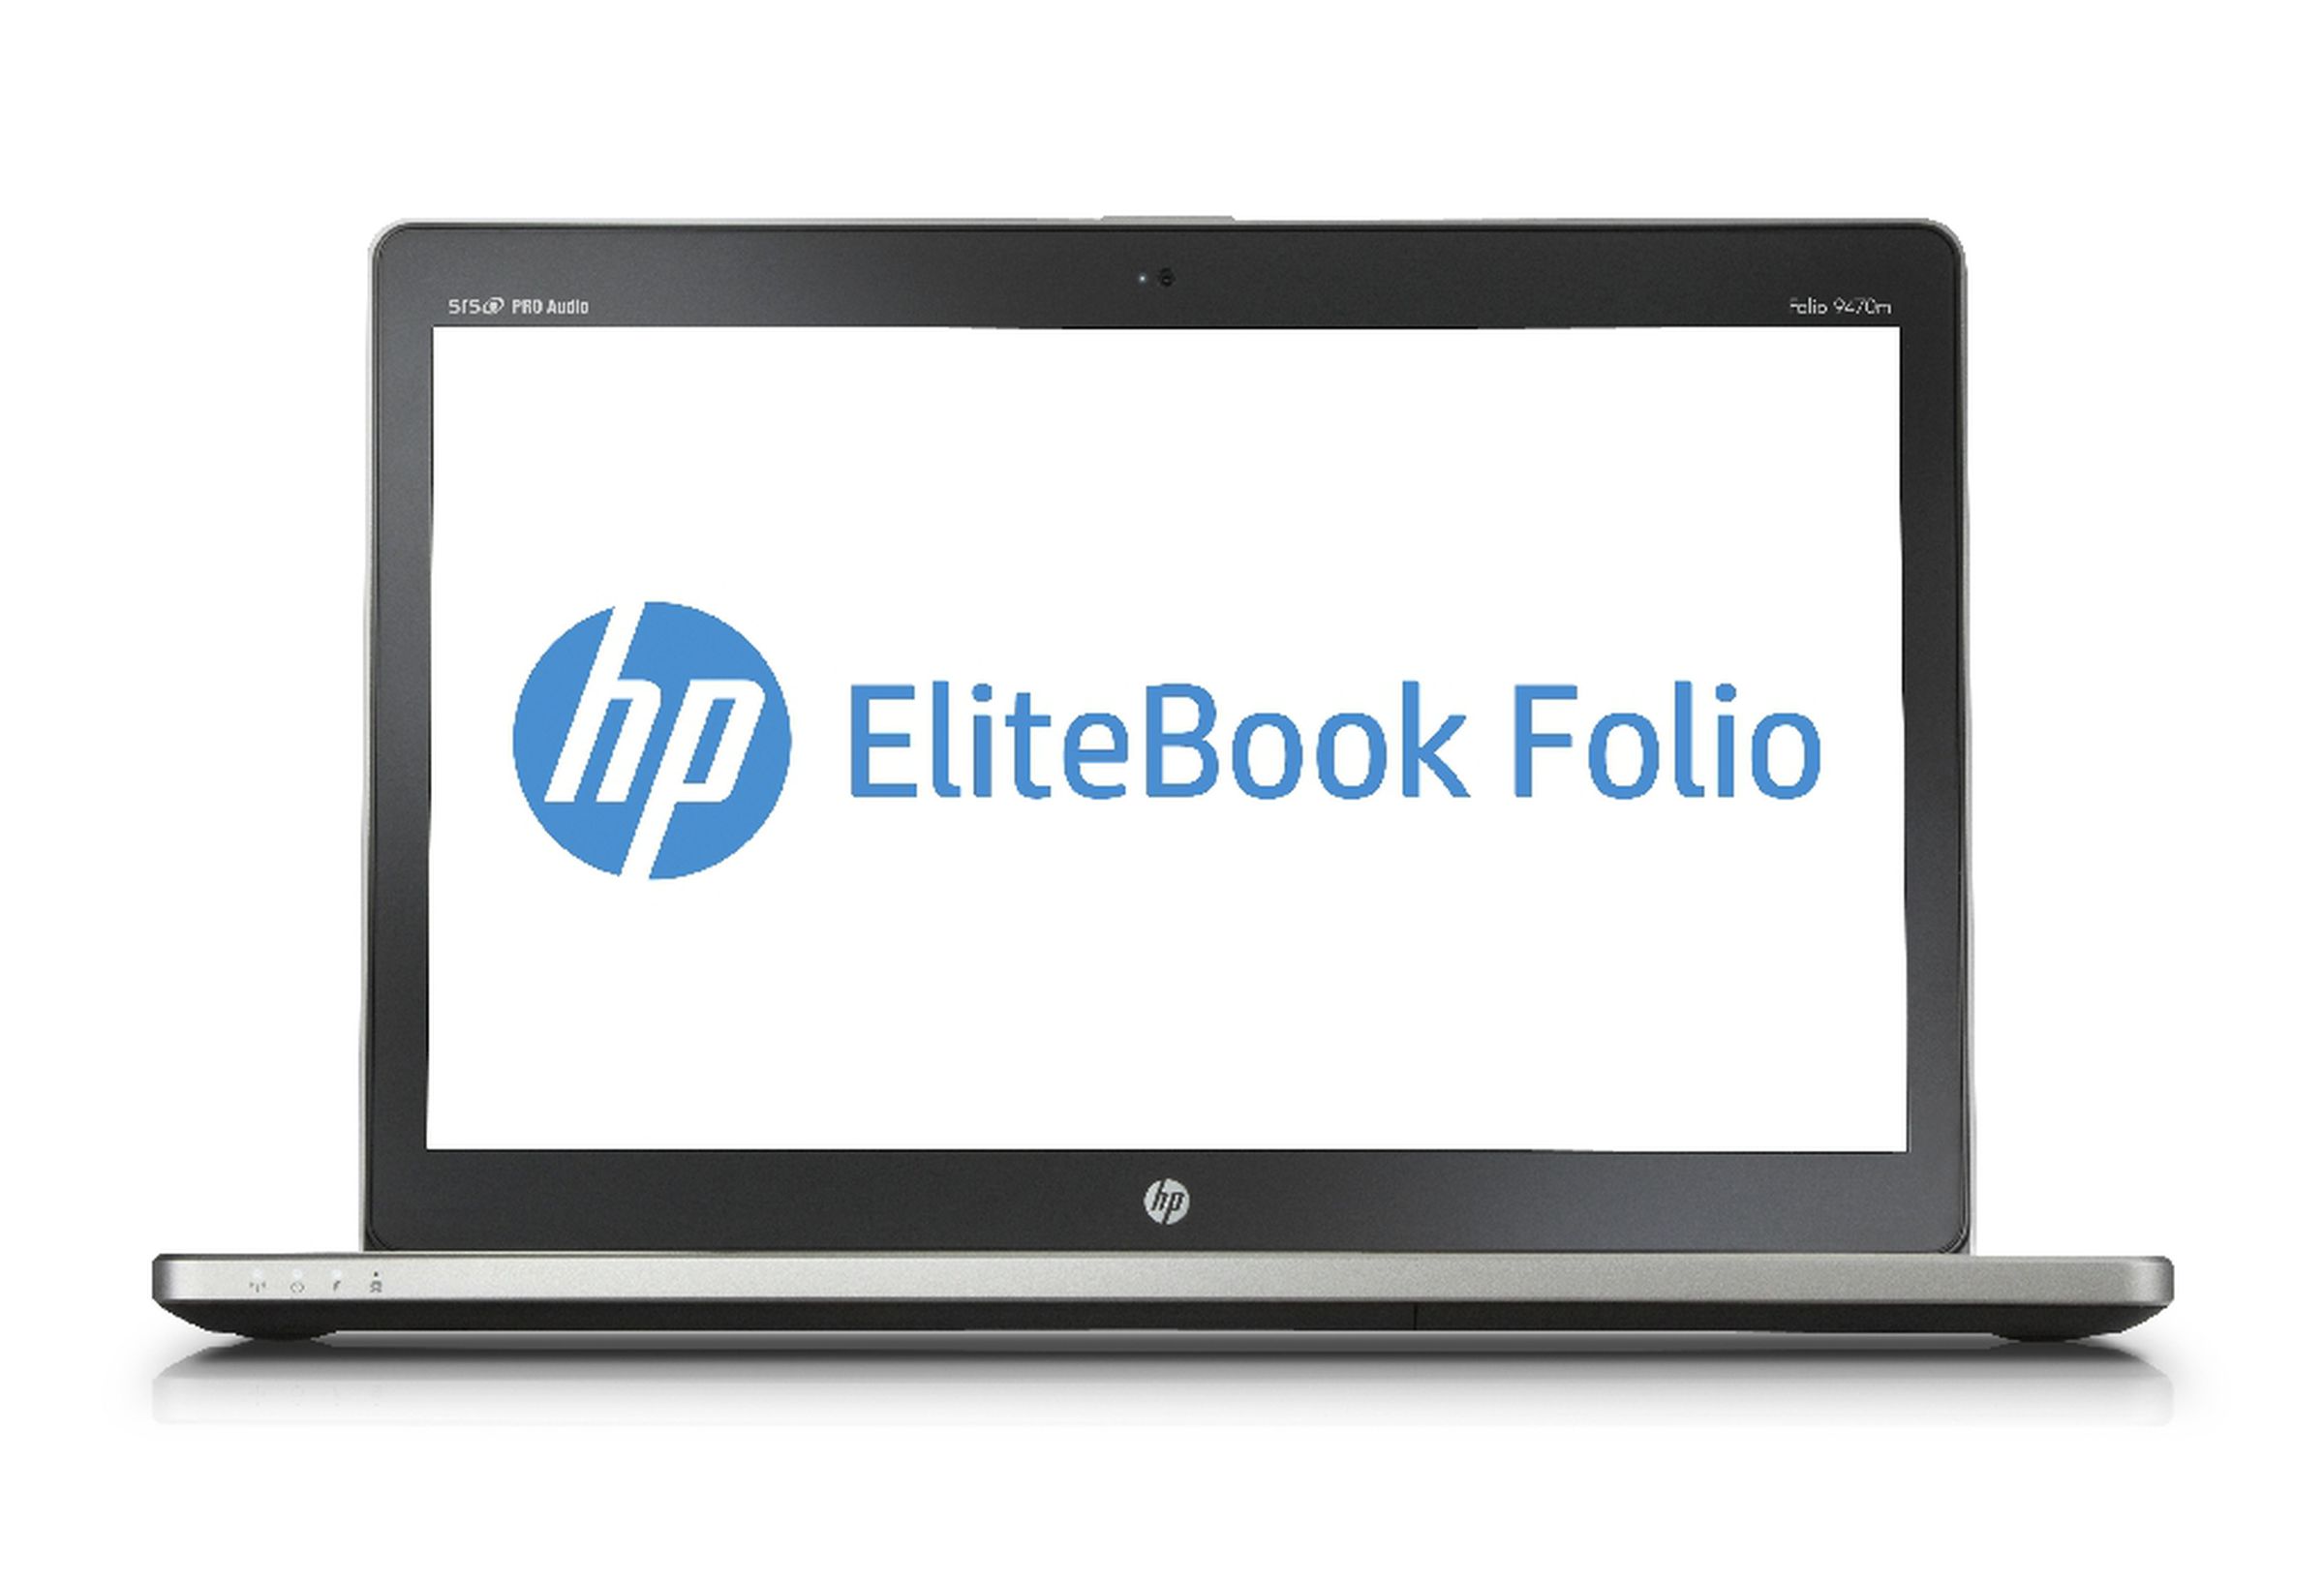 HP Elitebook Folio press pictures